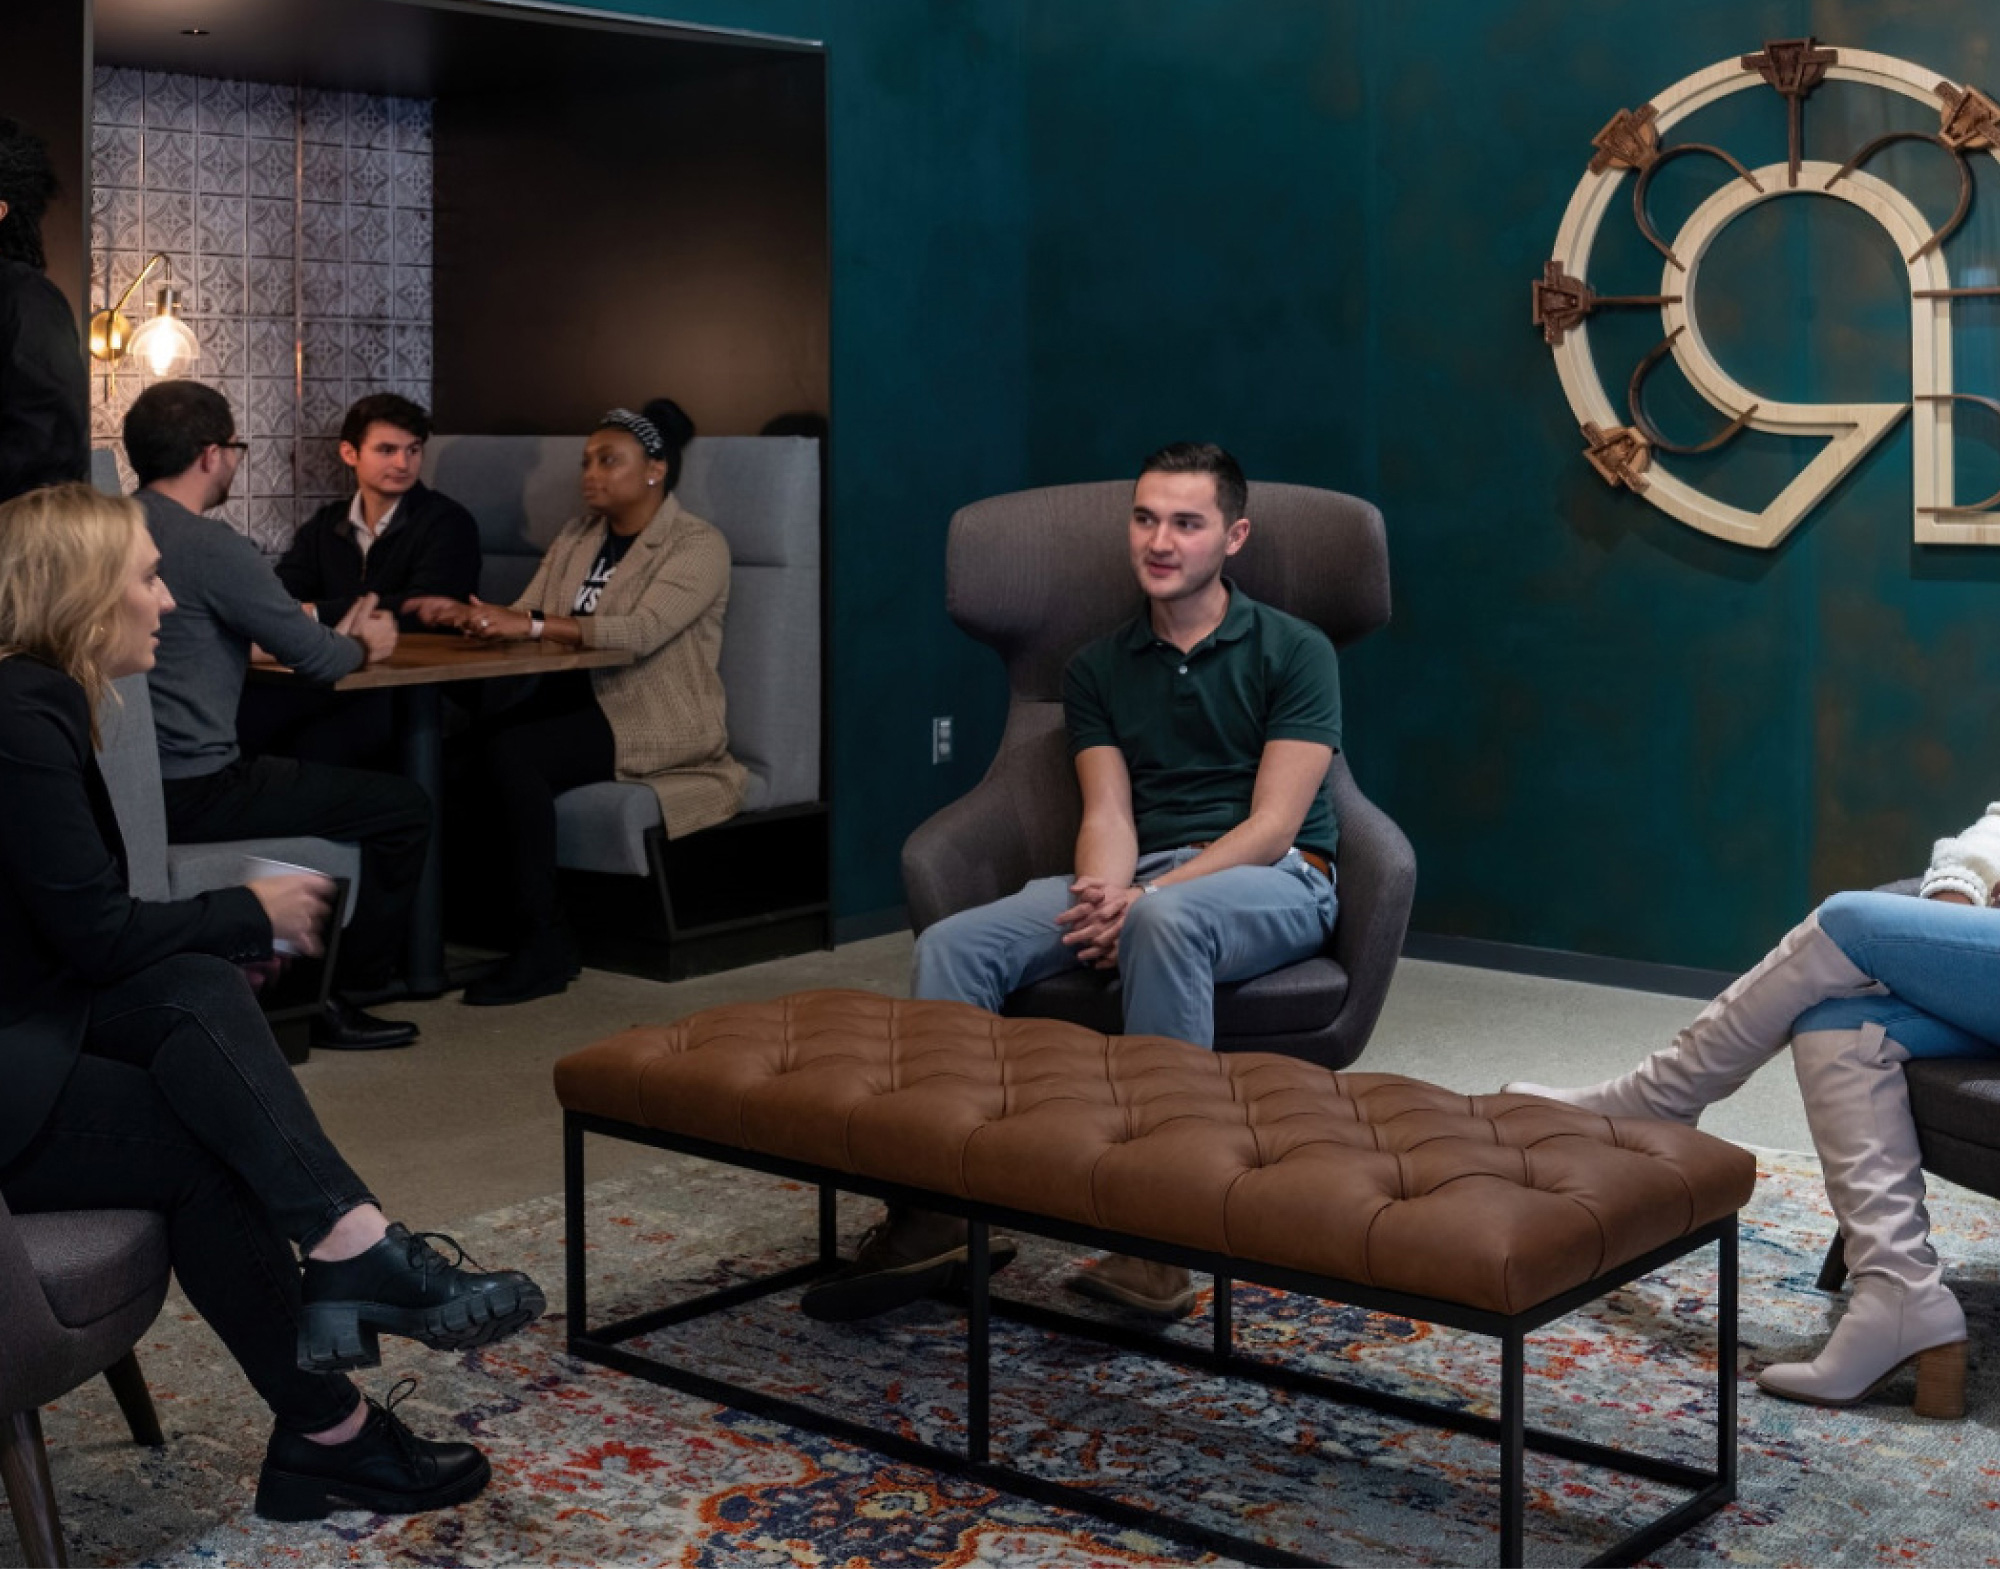 Un grupo de personas en un salón de oficina moderno, algunos sentados y otros de pie, que participan en la conversación.